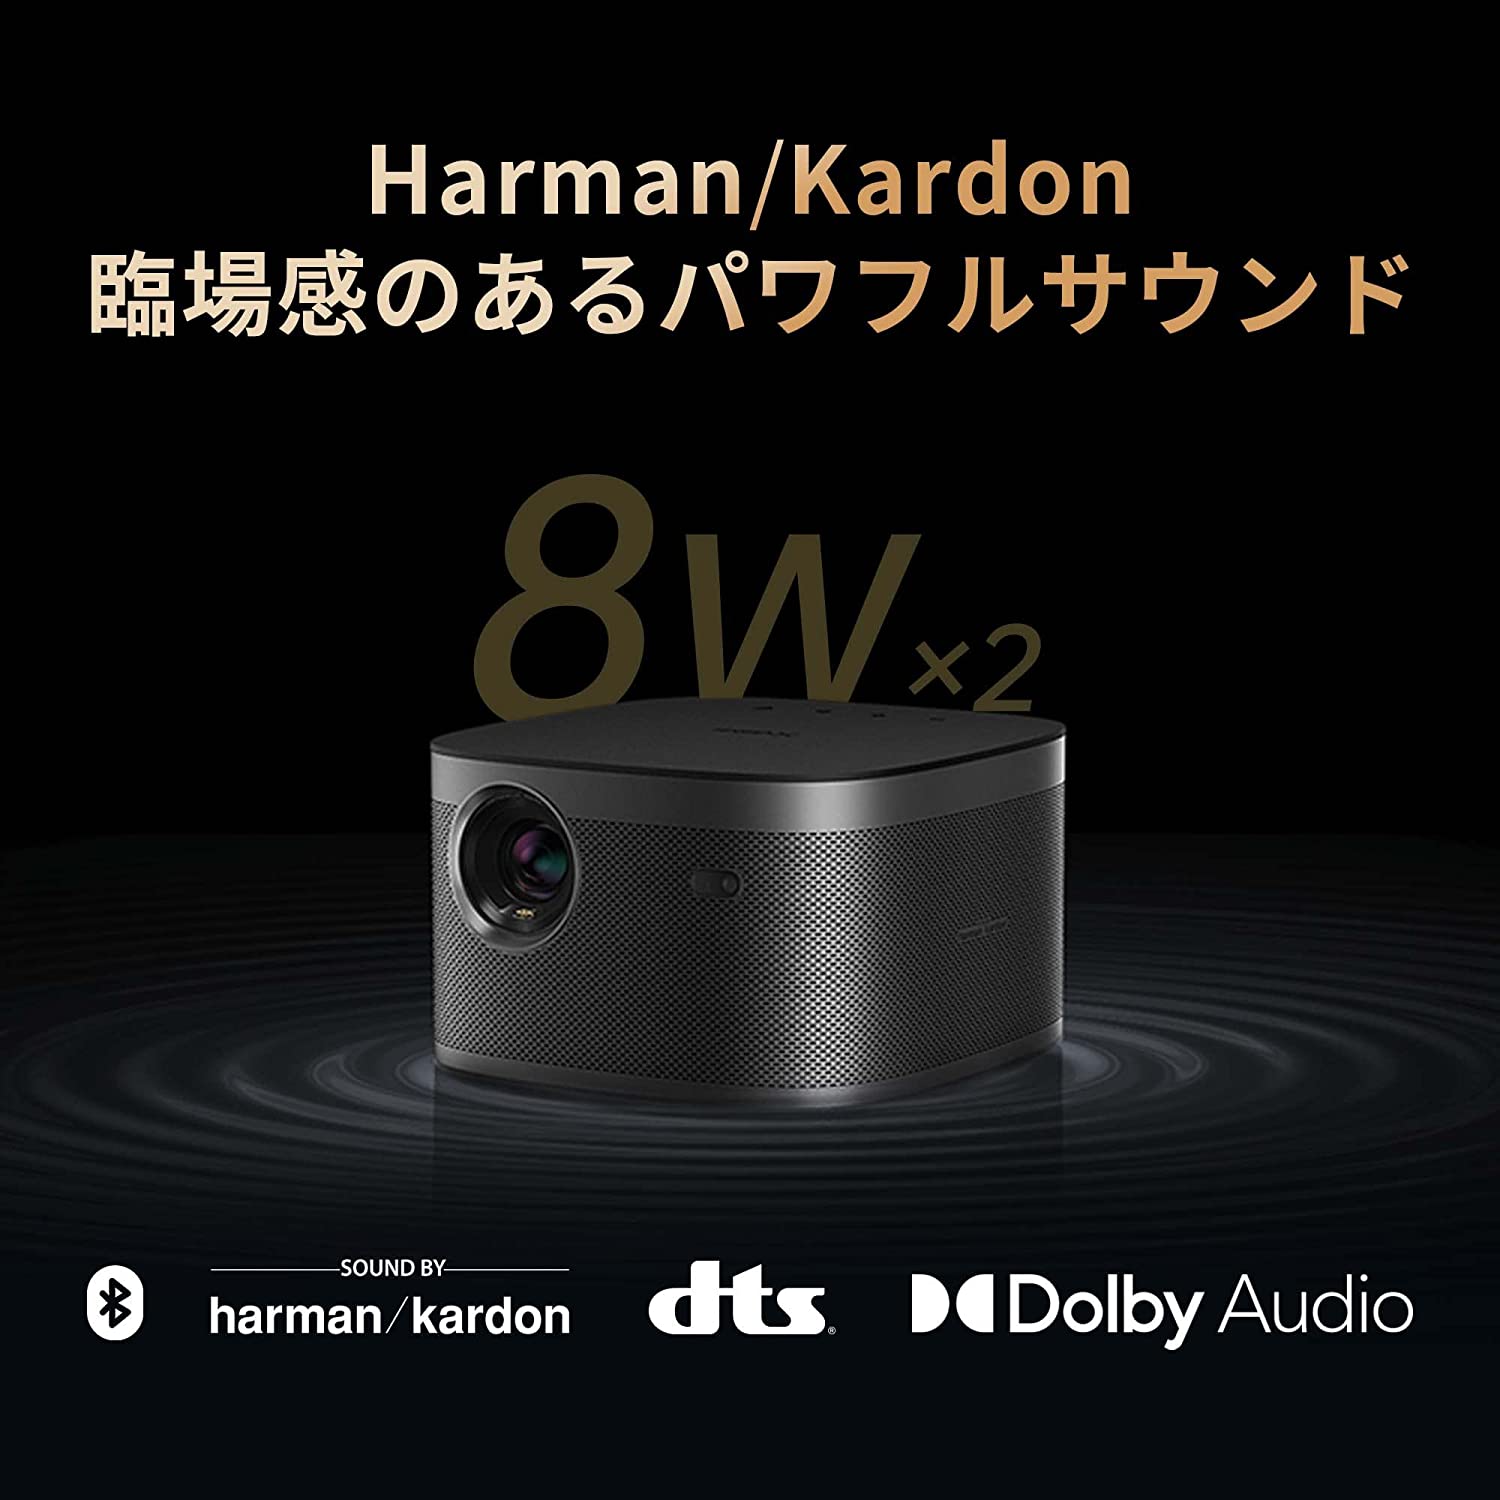 Harman/Kardonの高音質なスピーカーが搭載